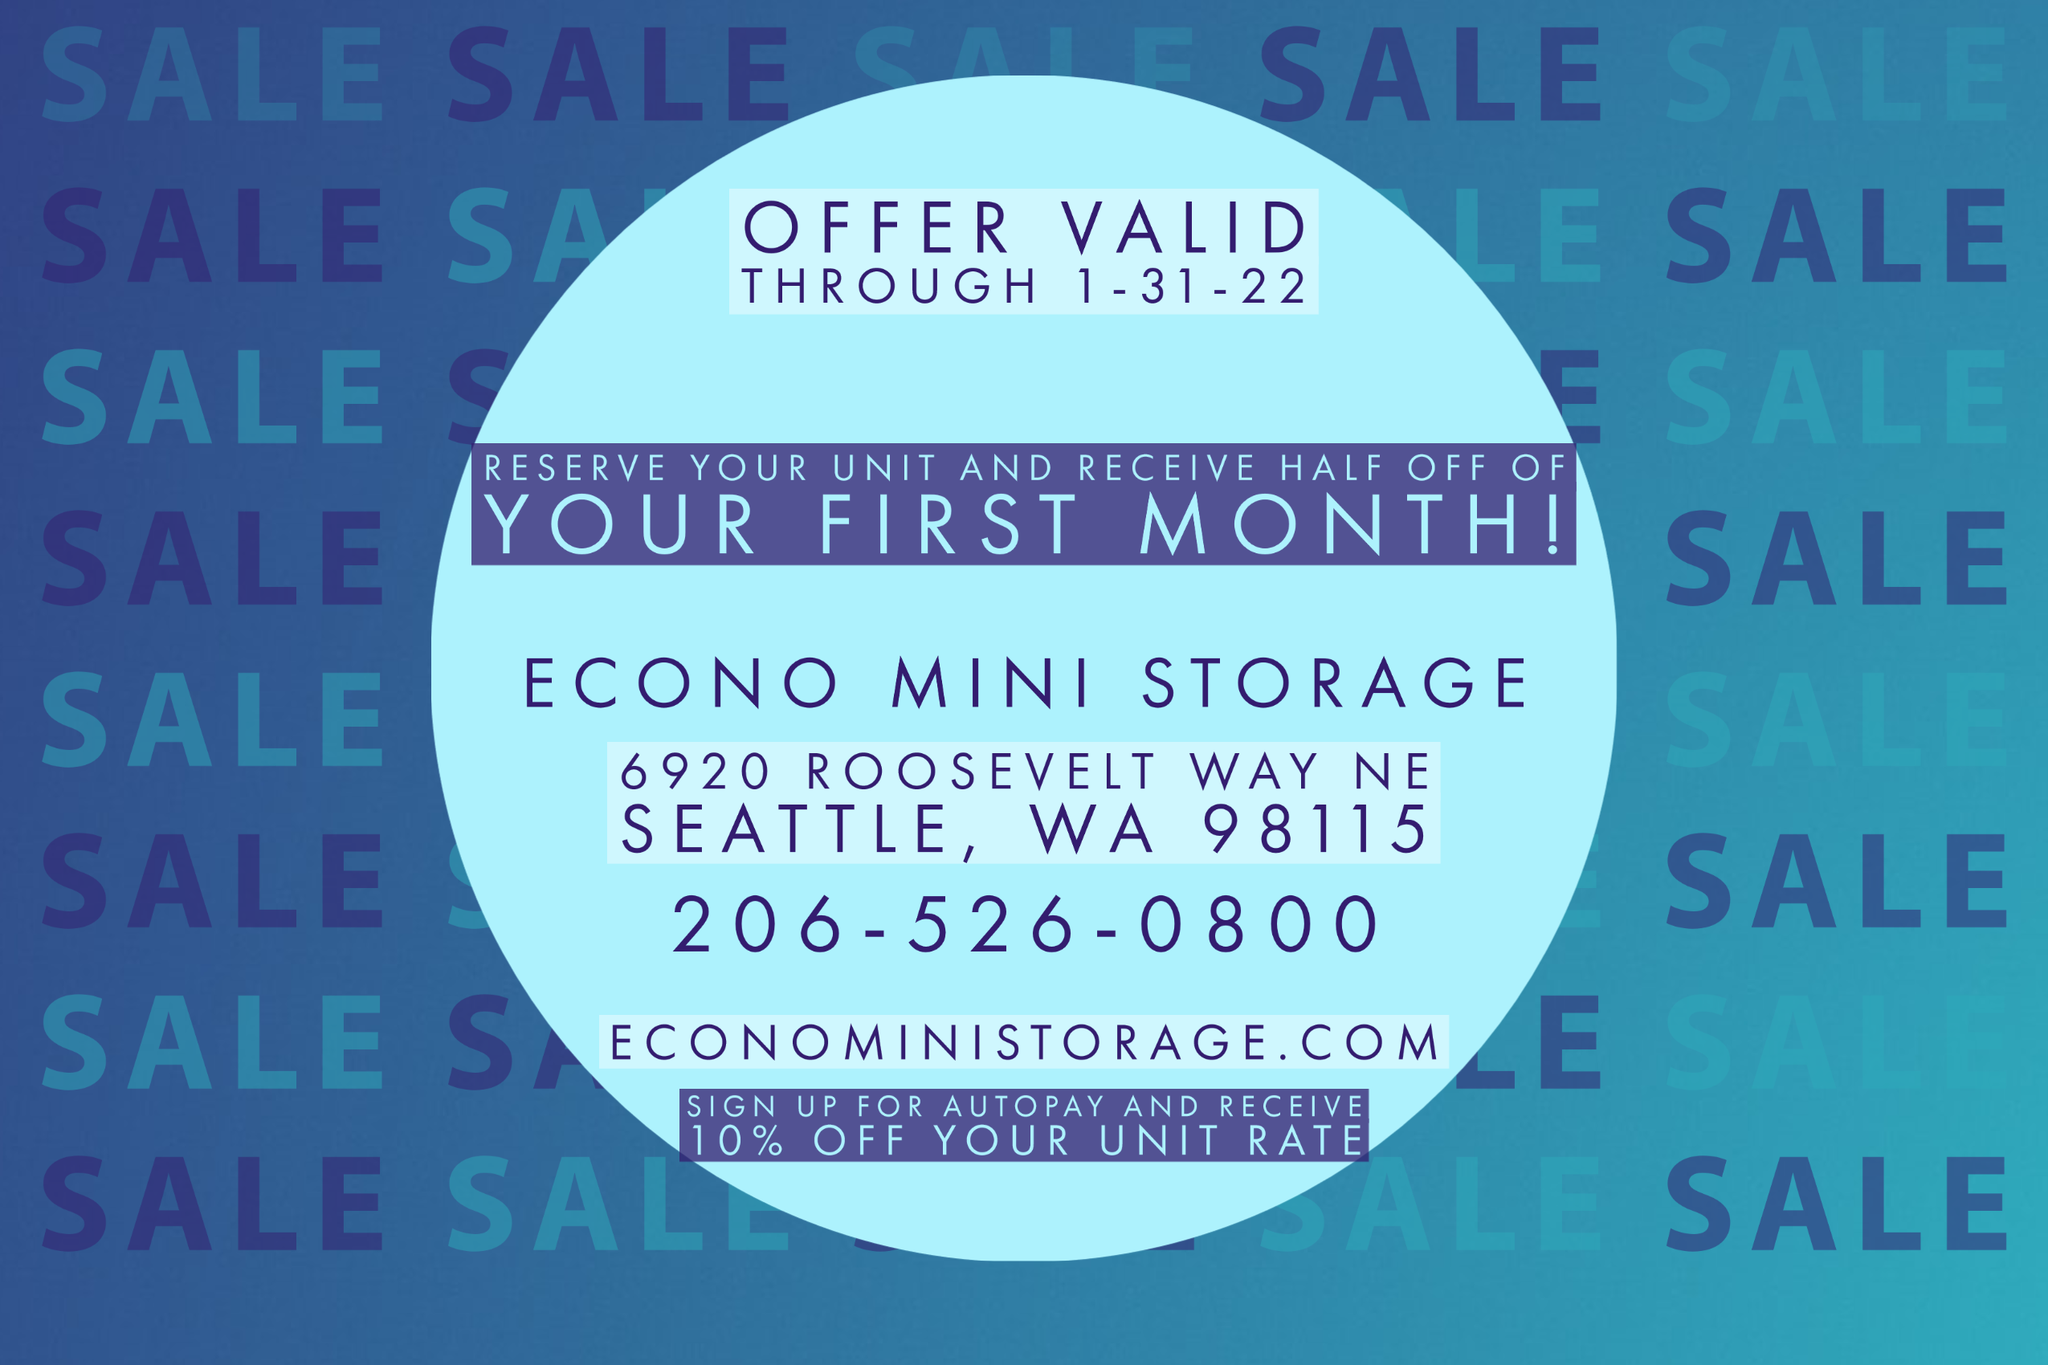 Econo Mini Storage and Private Mailboxes